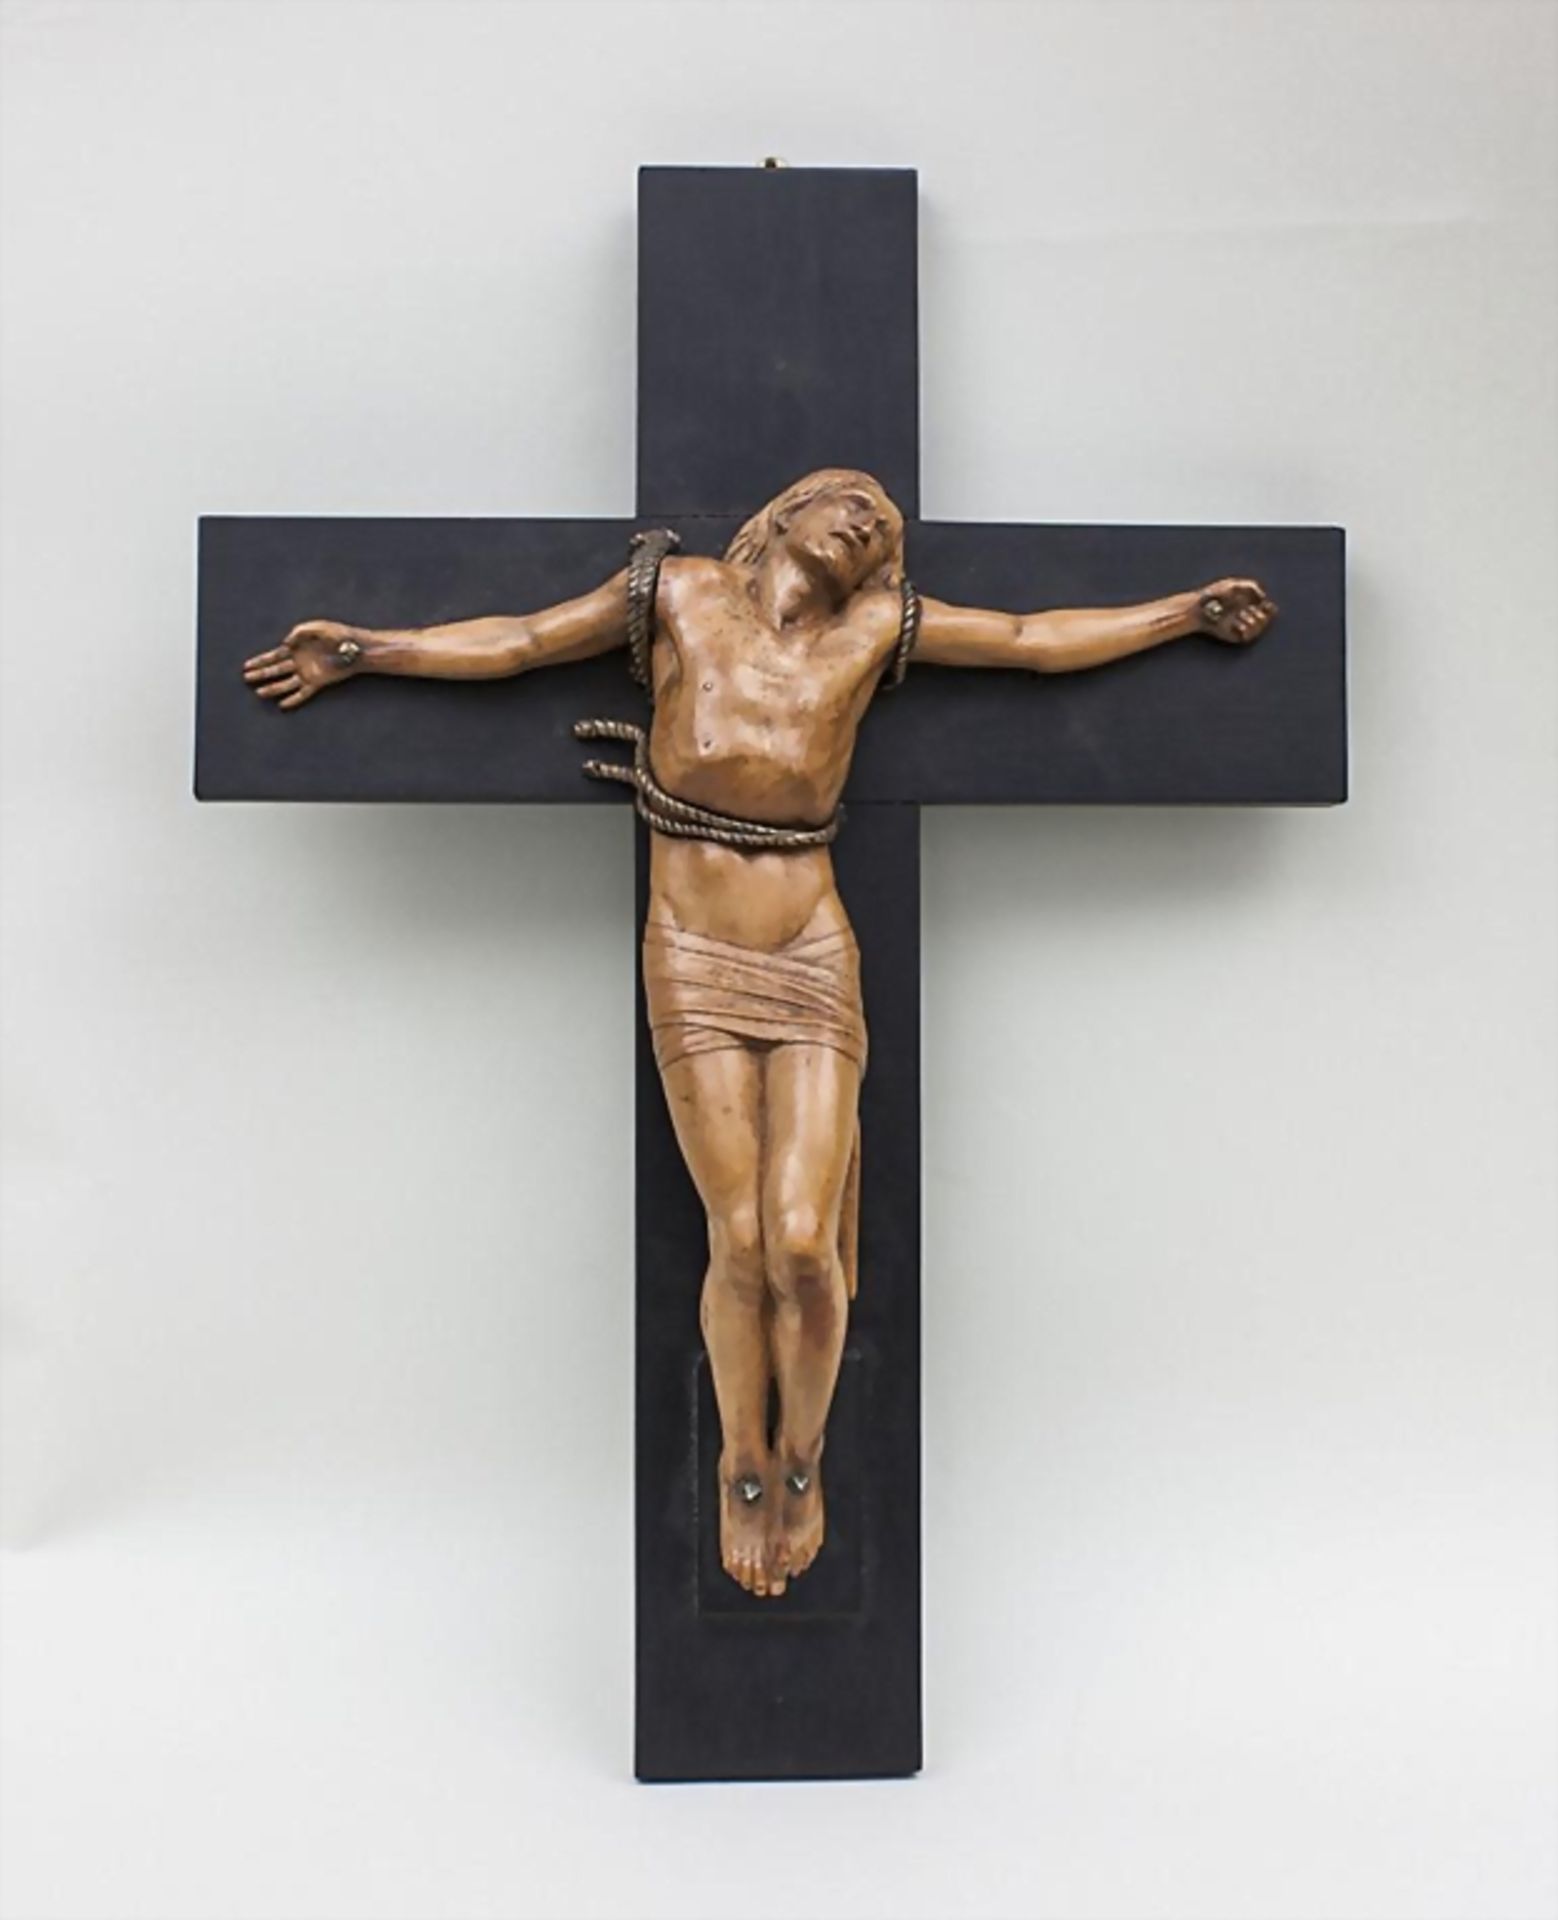 Leidender Christus am Kreuz/Crucifix, Frankreich, um 1920/1930 - Bild 2 aus 2